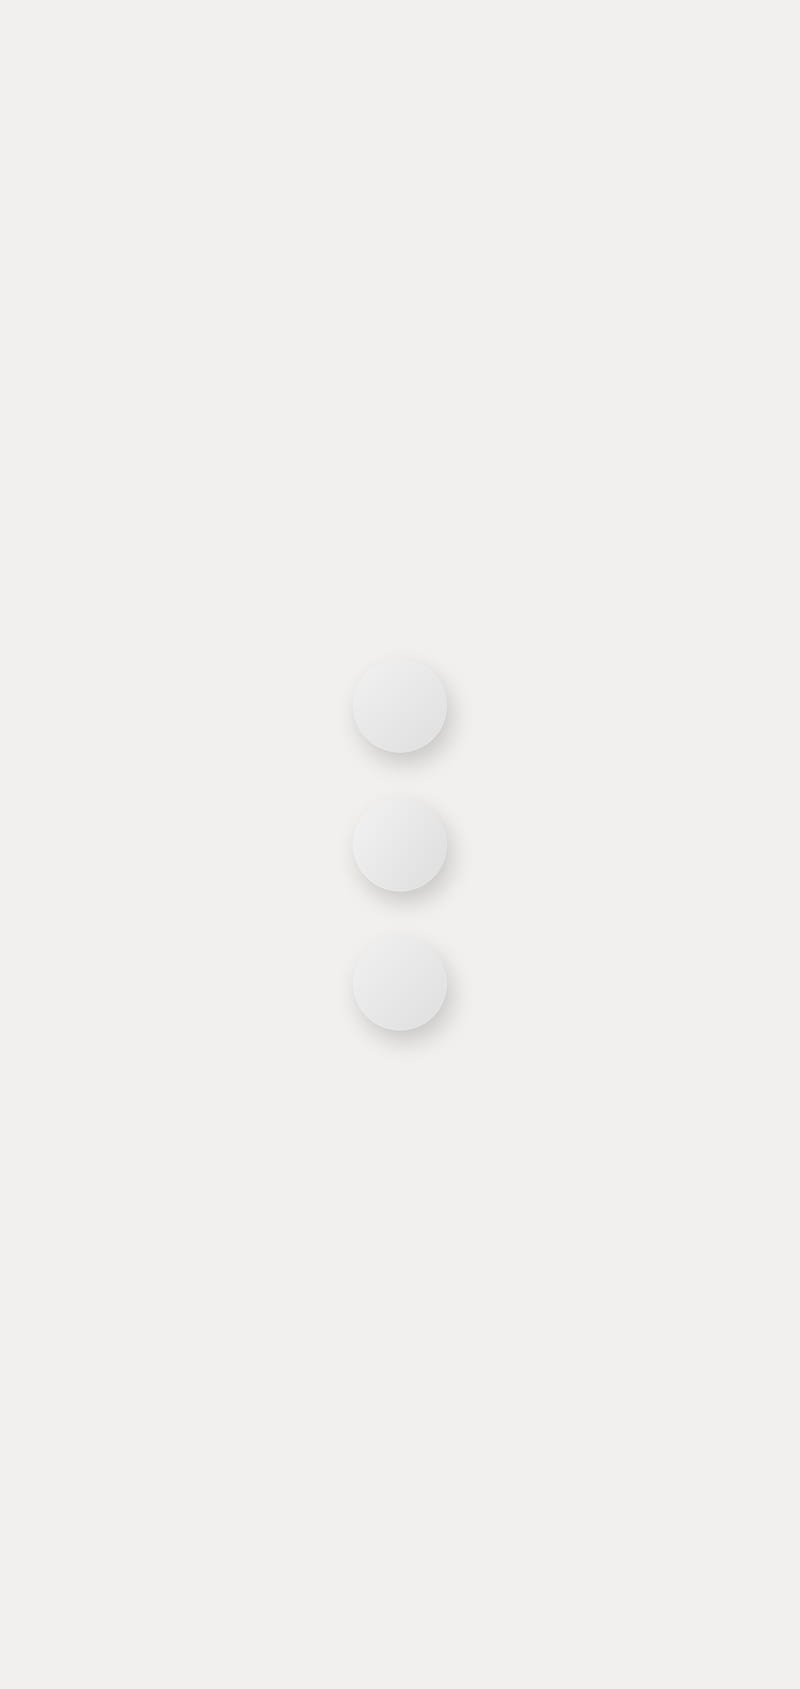 Three dots, circles, flat, gray, minimal, shades, shadow, silver, white, HD phone wallpaper